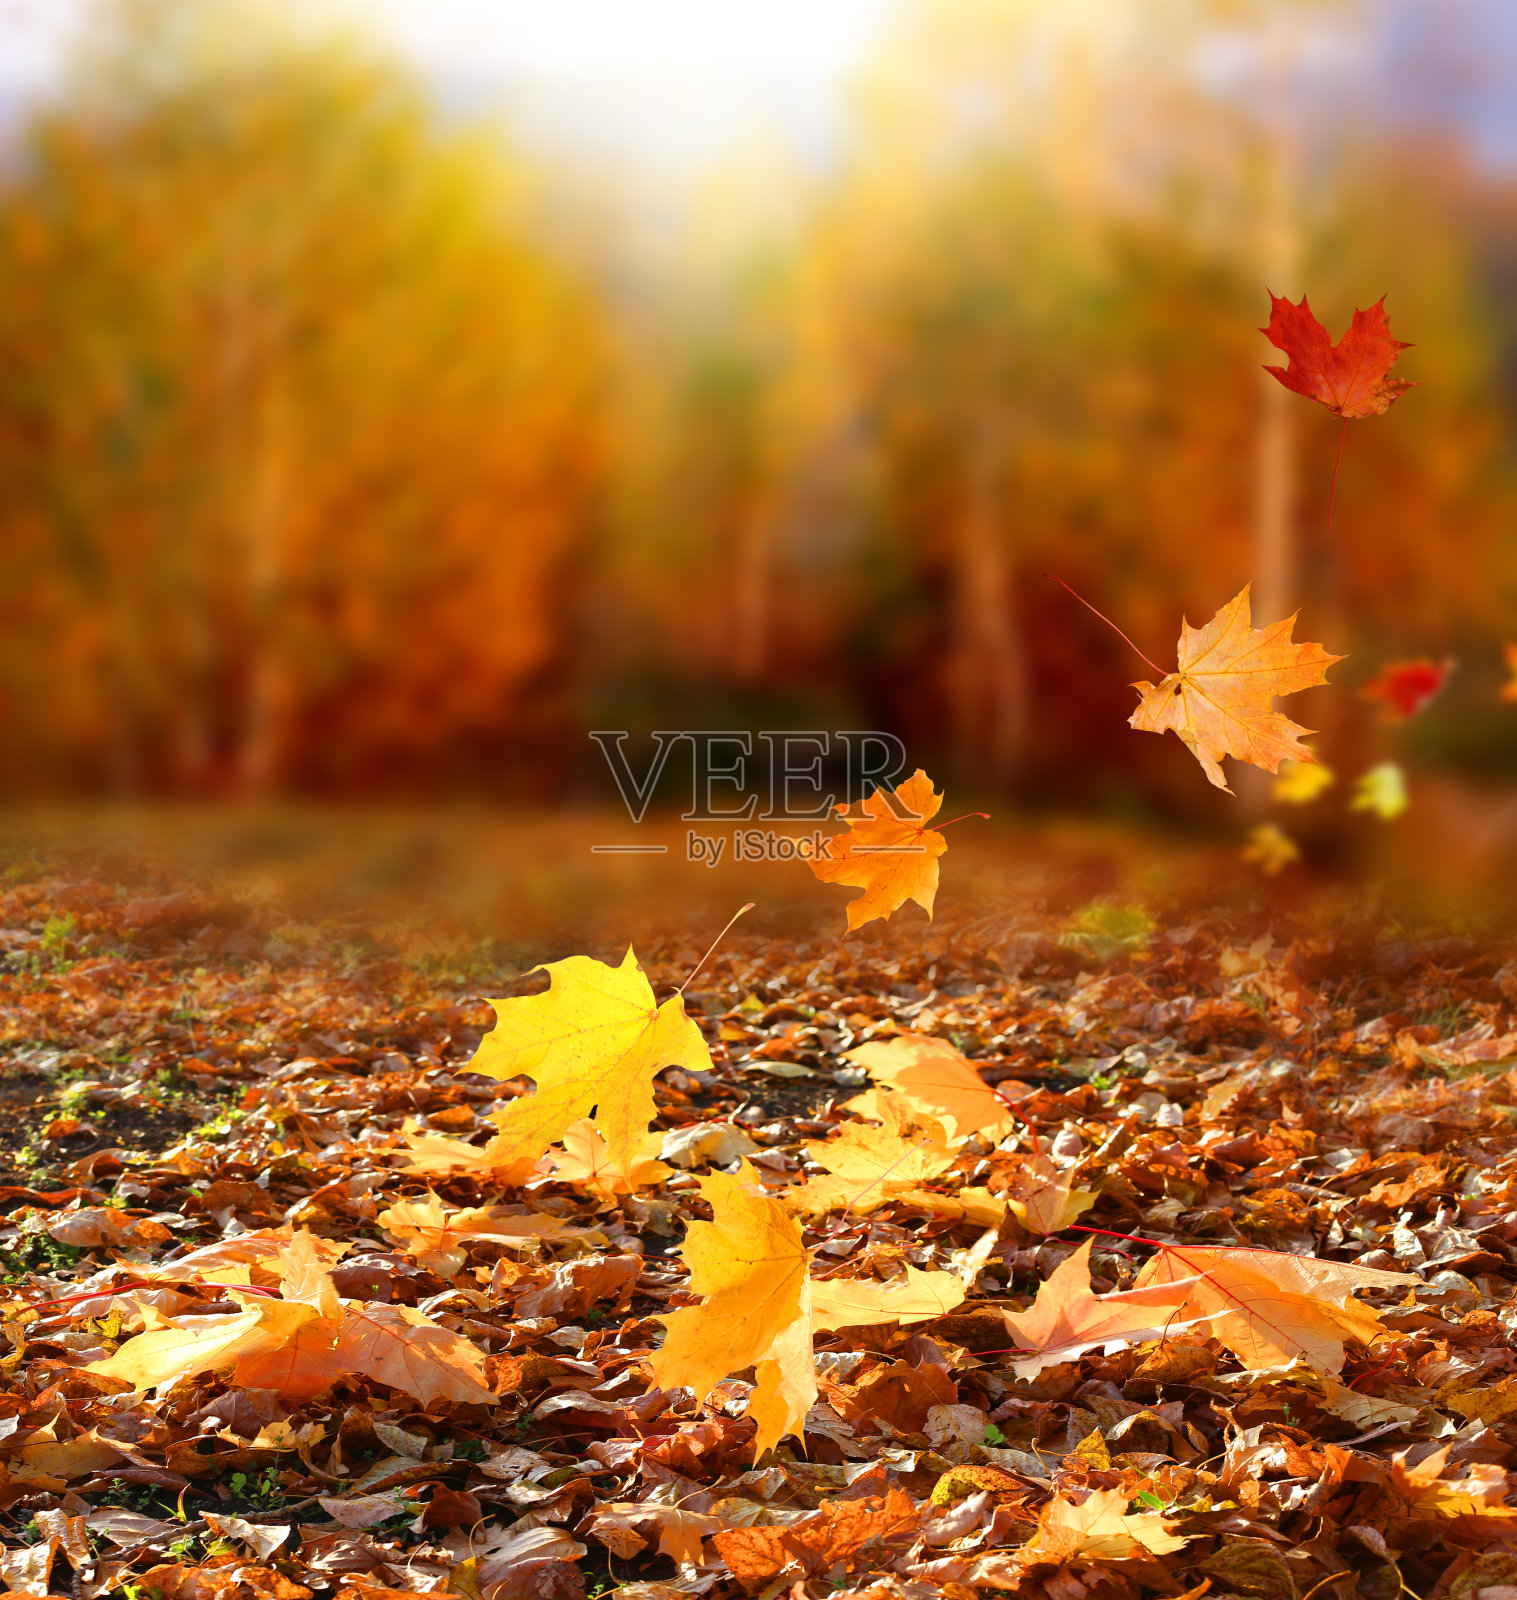 描写景色句子大全_一句描写秋天景色的句子_颐和园秋天景色描写